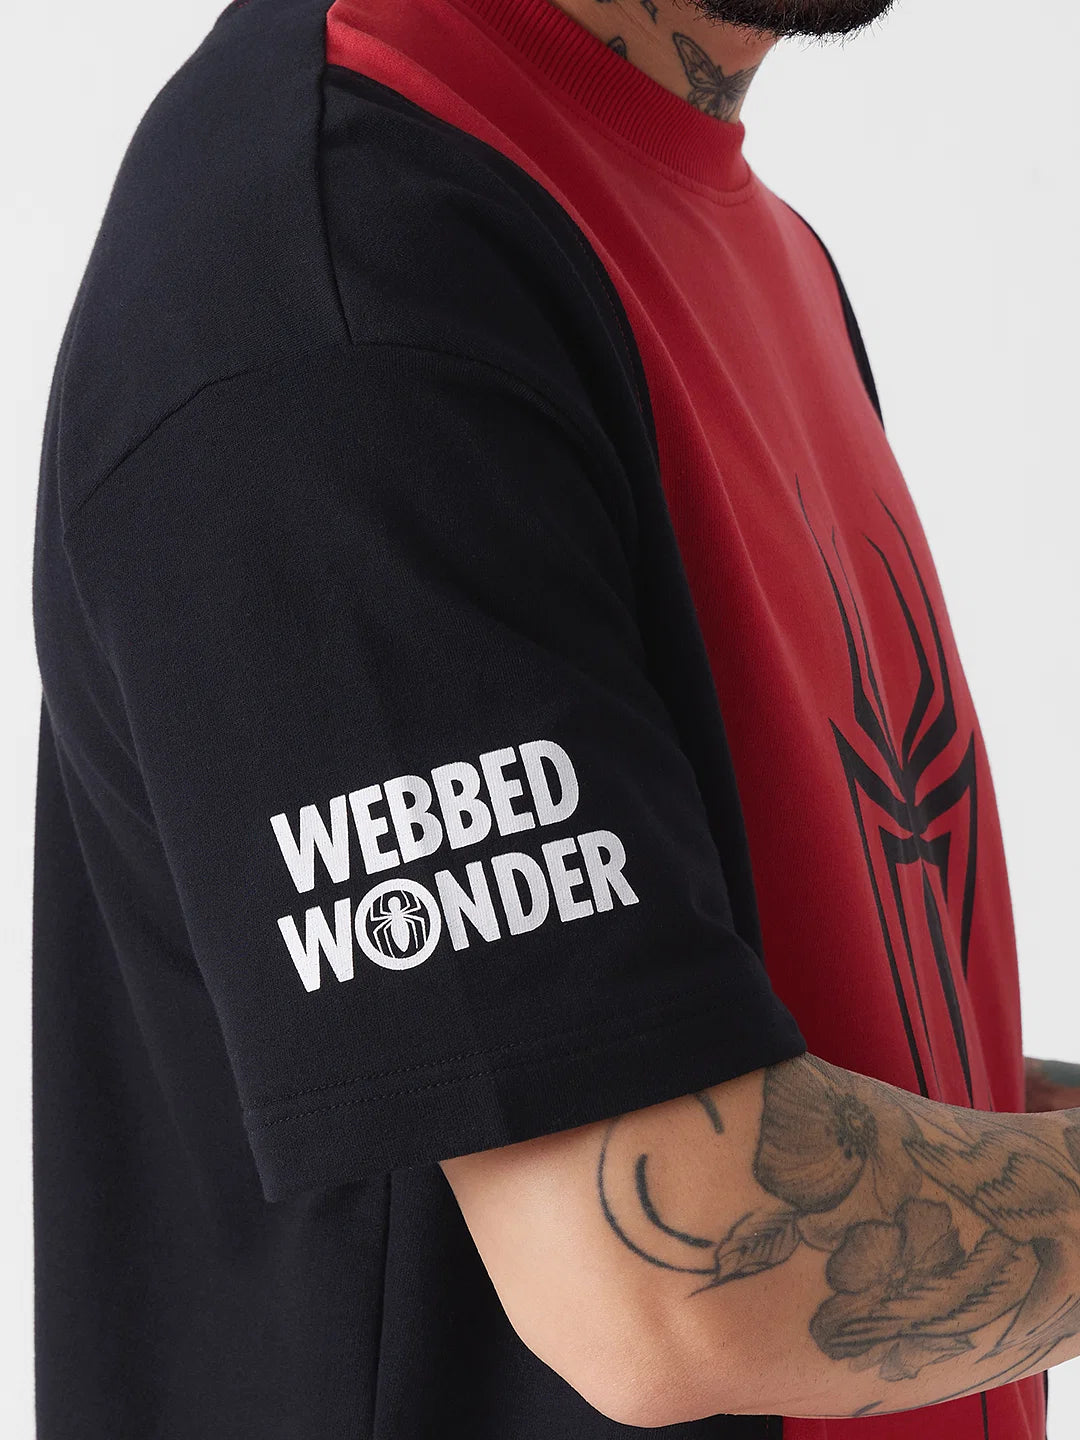 Spider-Man Web Wonder (UK version)